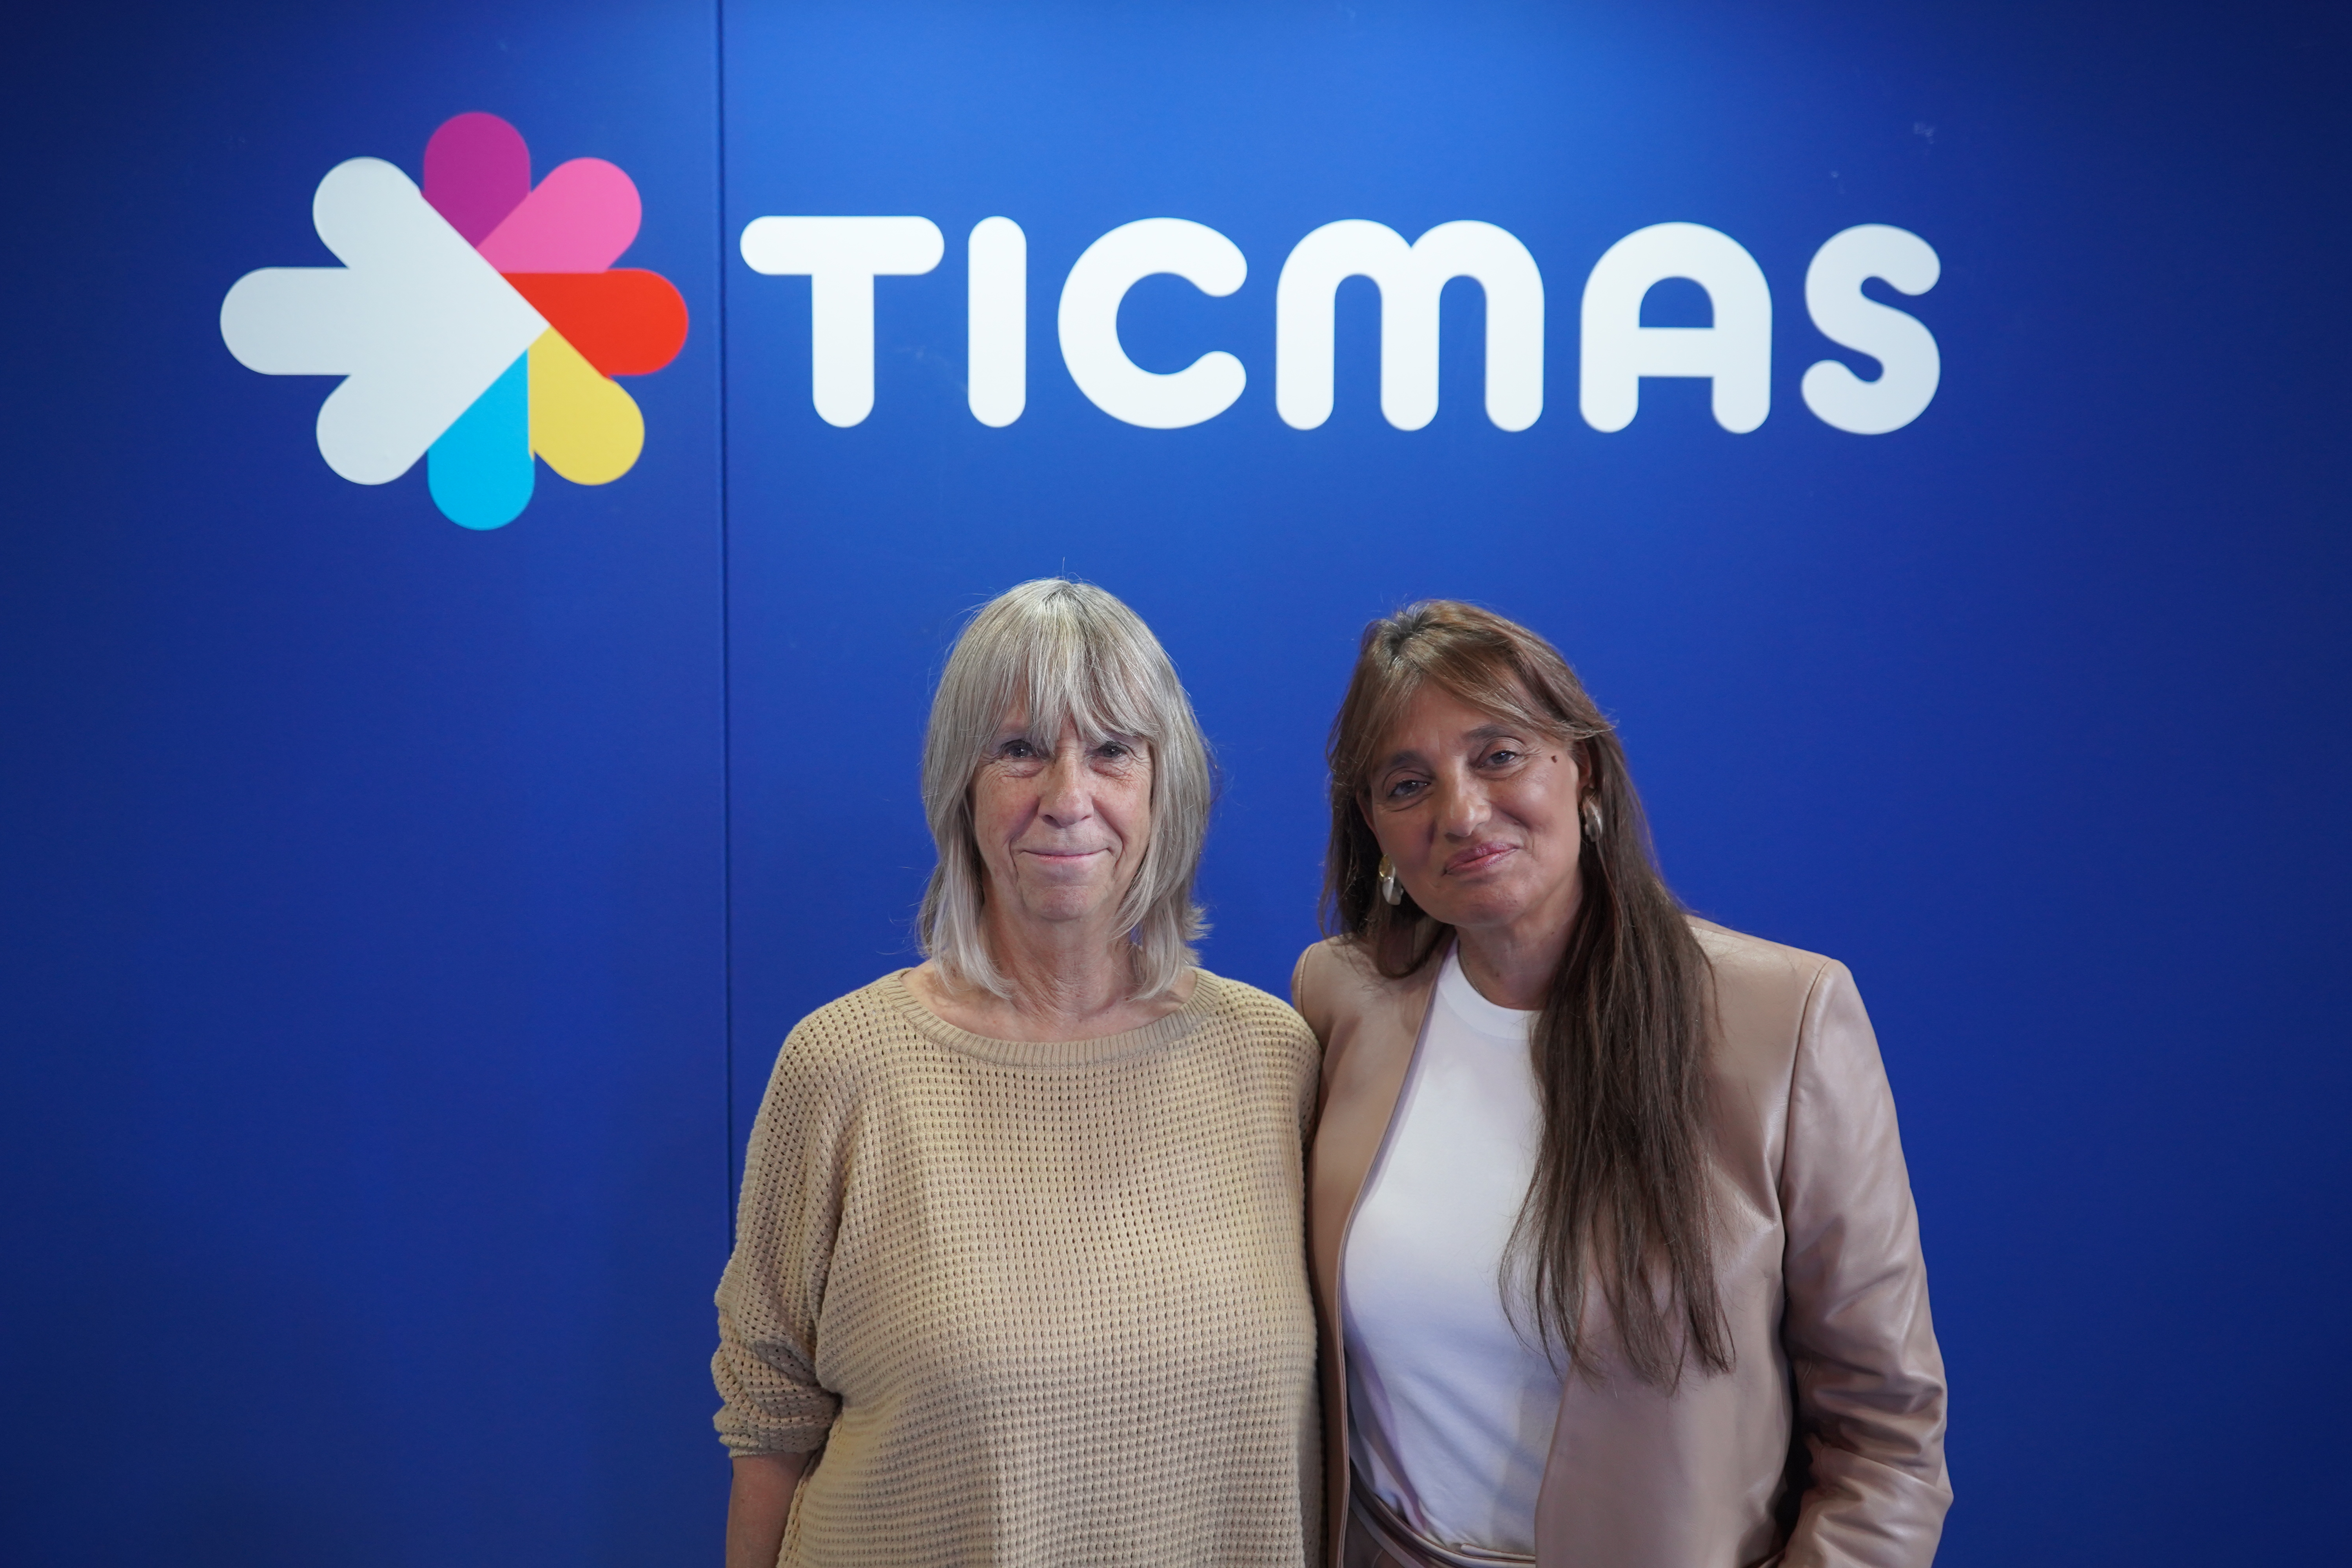 Silvia Torres Carbonell, directora general de Wise, junto a Viviana Zocco, CEO de Ticmas (foto: Agustin Brashich)